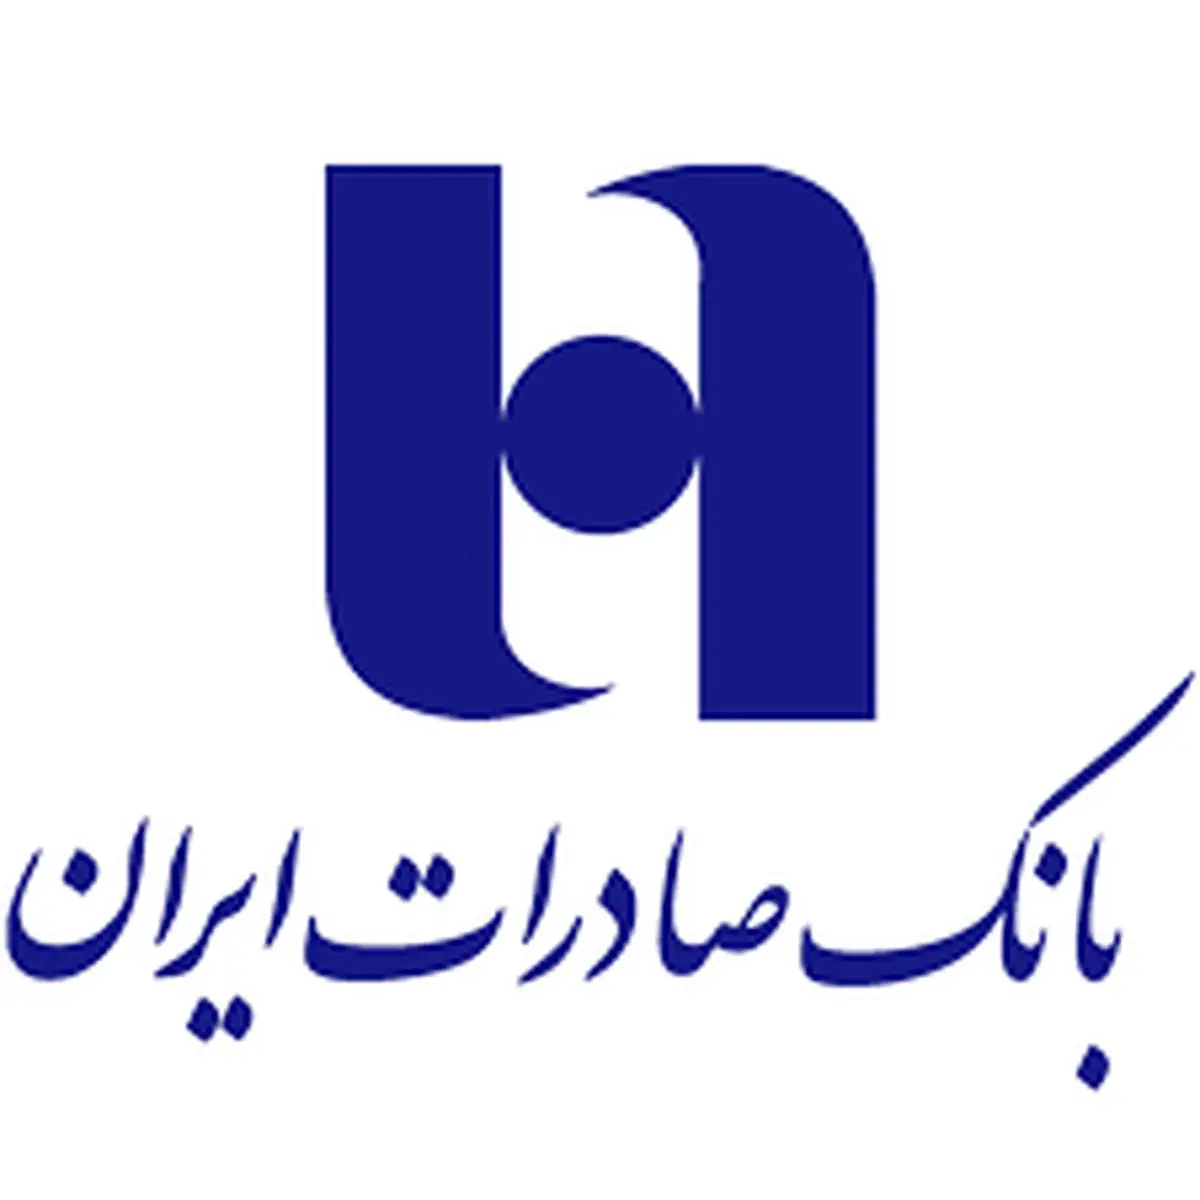 مشارکت بانک صادرات ایران در نمایشگاه پتروشیمی عسلویه

